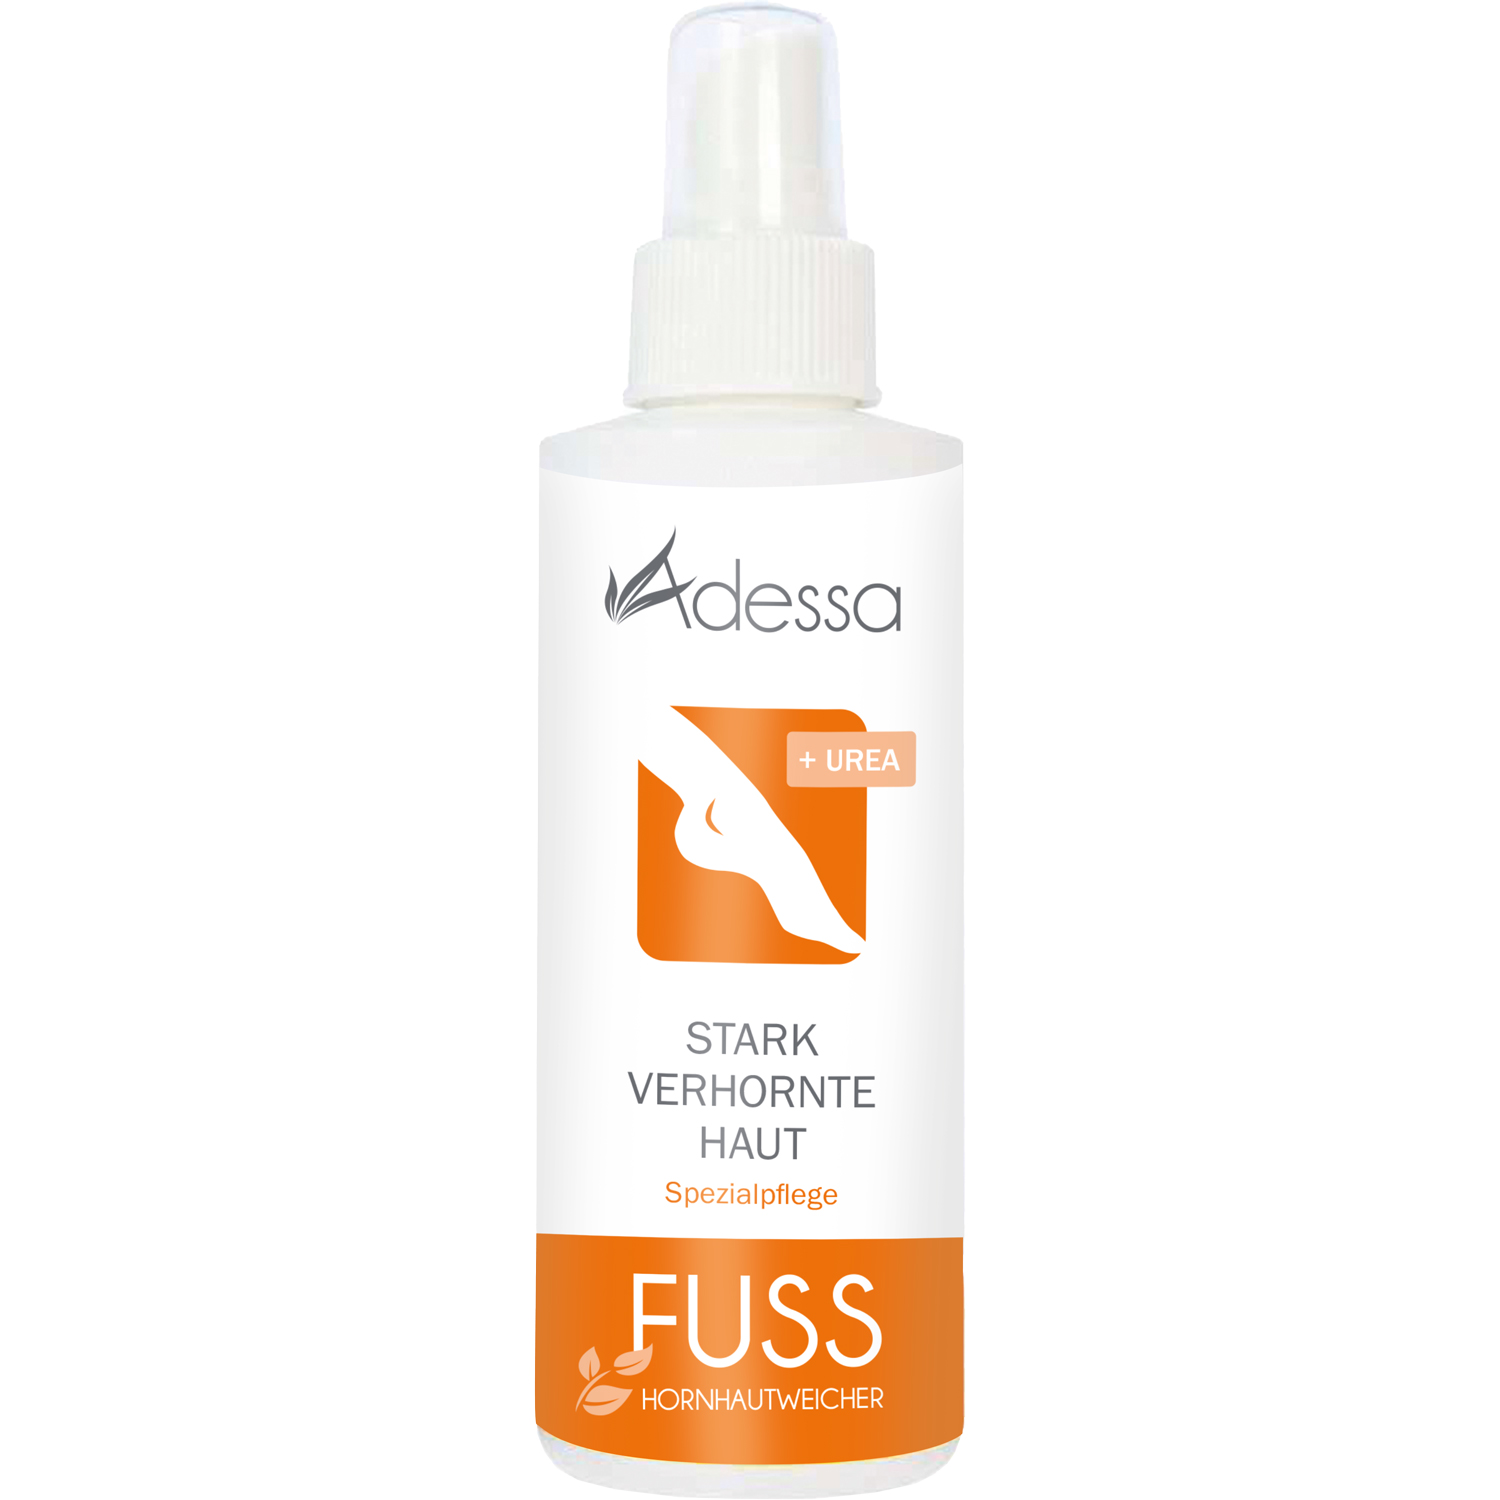 Adessa Hornhautweicher-Spray für stark verhornte Haut, 200 ml